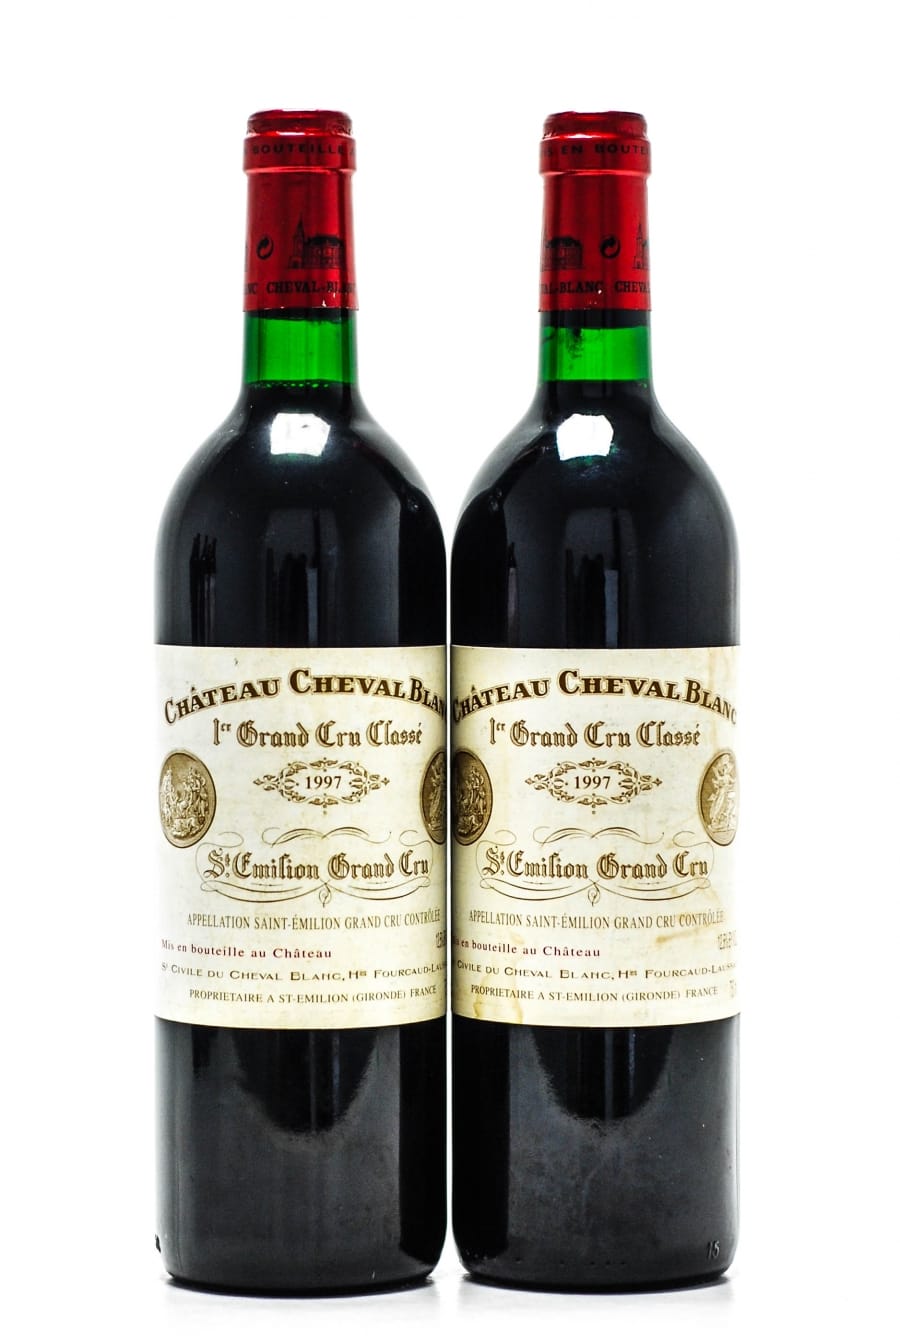 Chateau Cheval Blanc - Chateau Cheval Blanc 1997